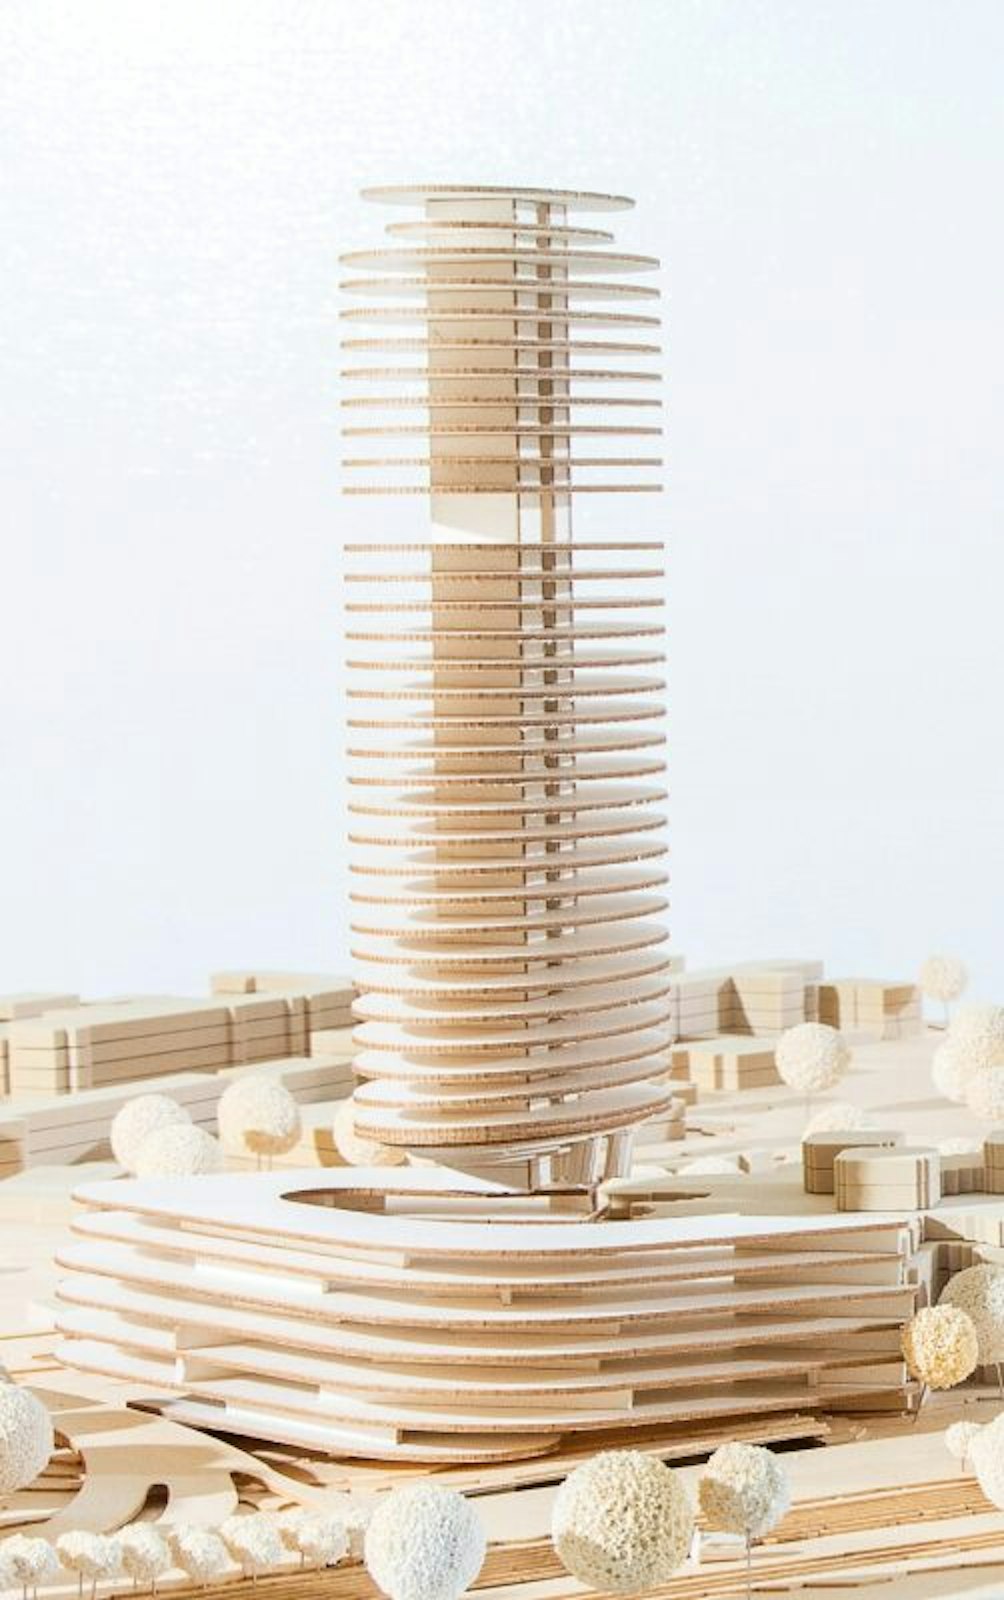 Dieser Entwurf der DEVK für ein 145-Meter-Hochhaus wird voraussichtlich auch Teil des Architektenwettbewerbs.